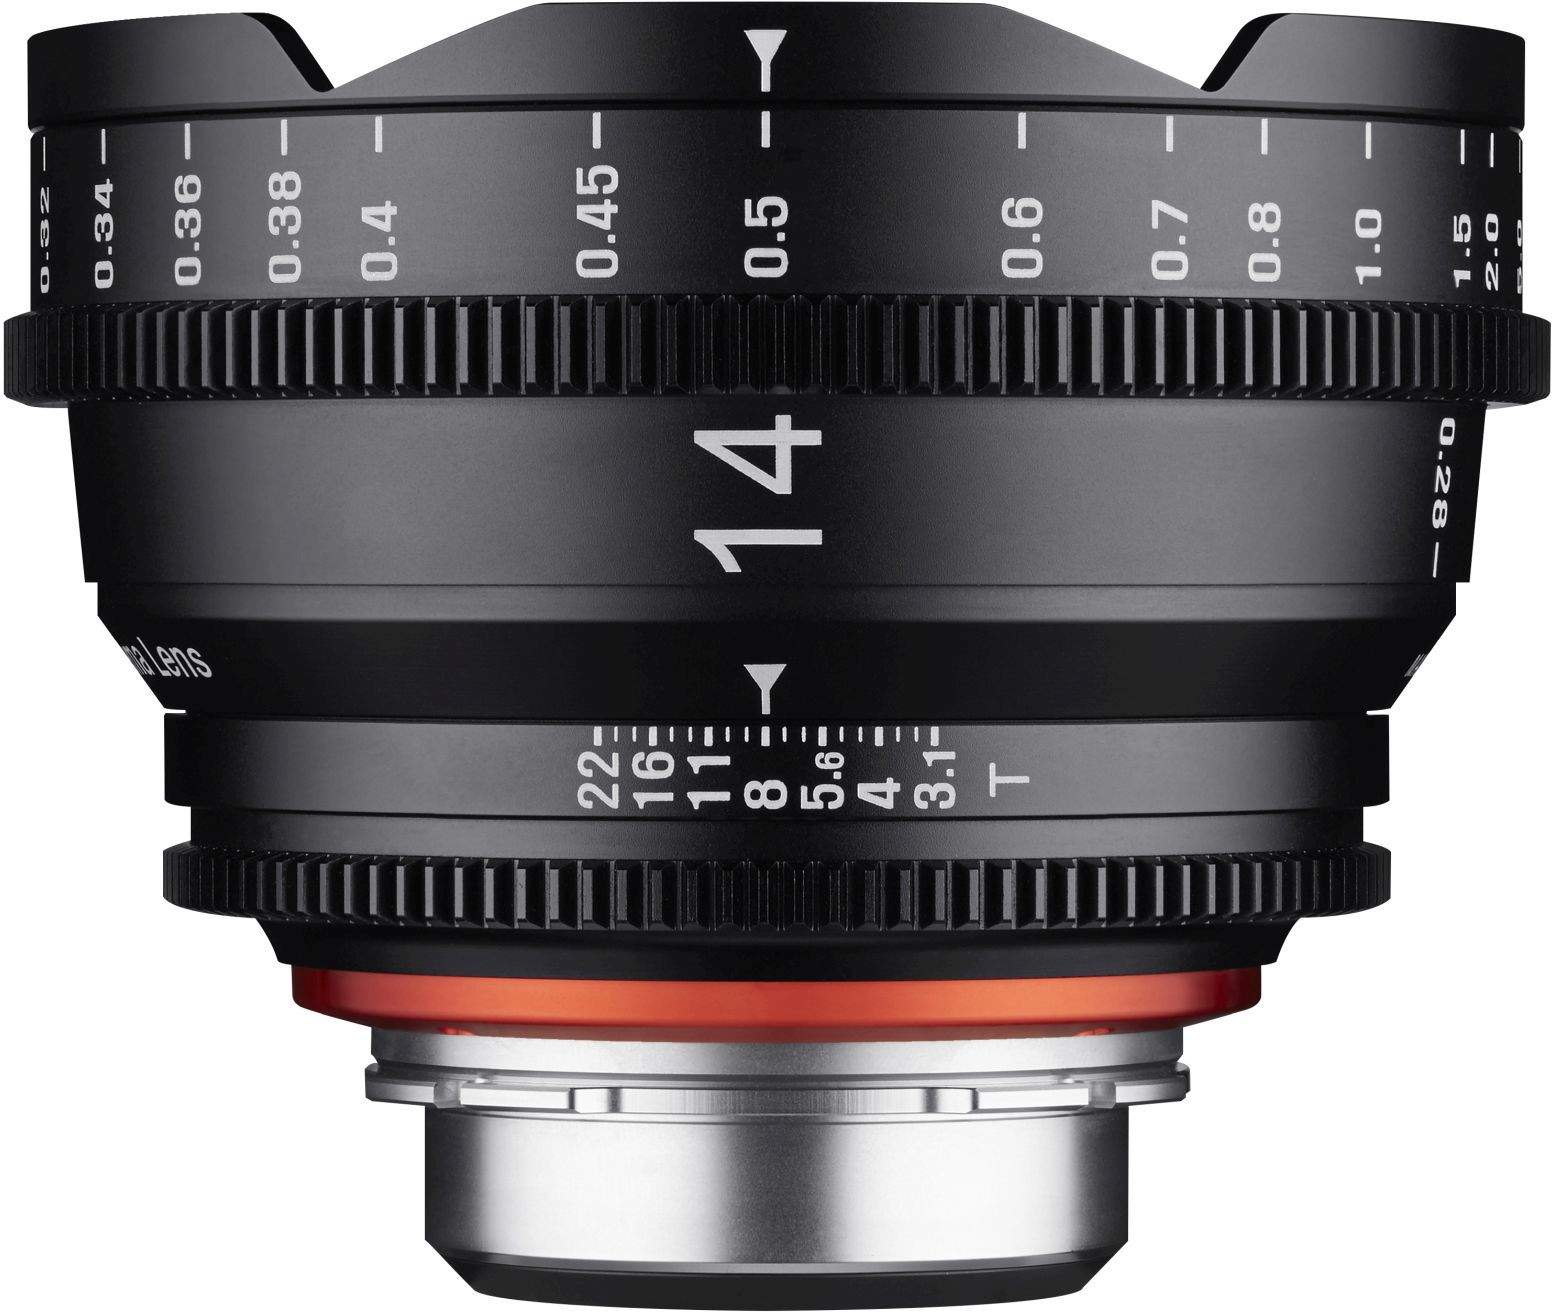 14mm T3.1 XEEN PL Full Frame Cinema Lens main image